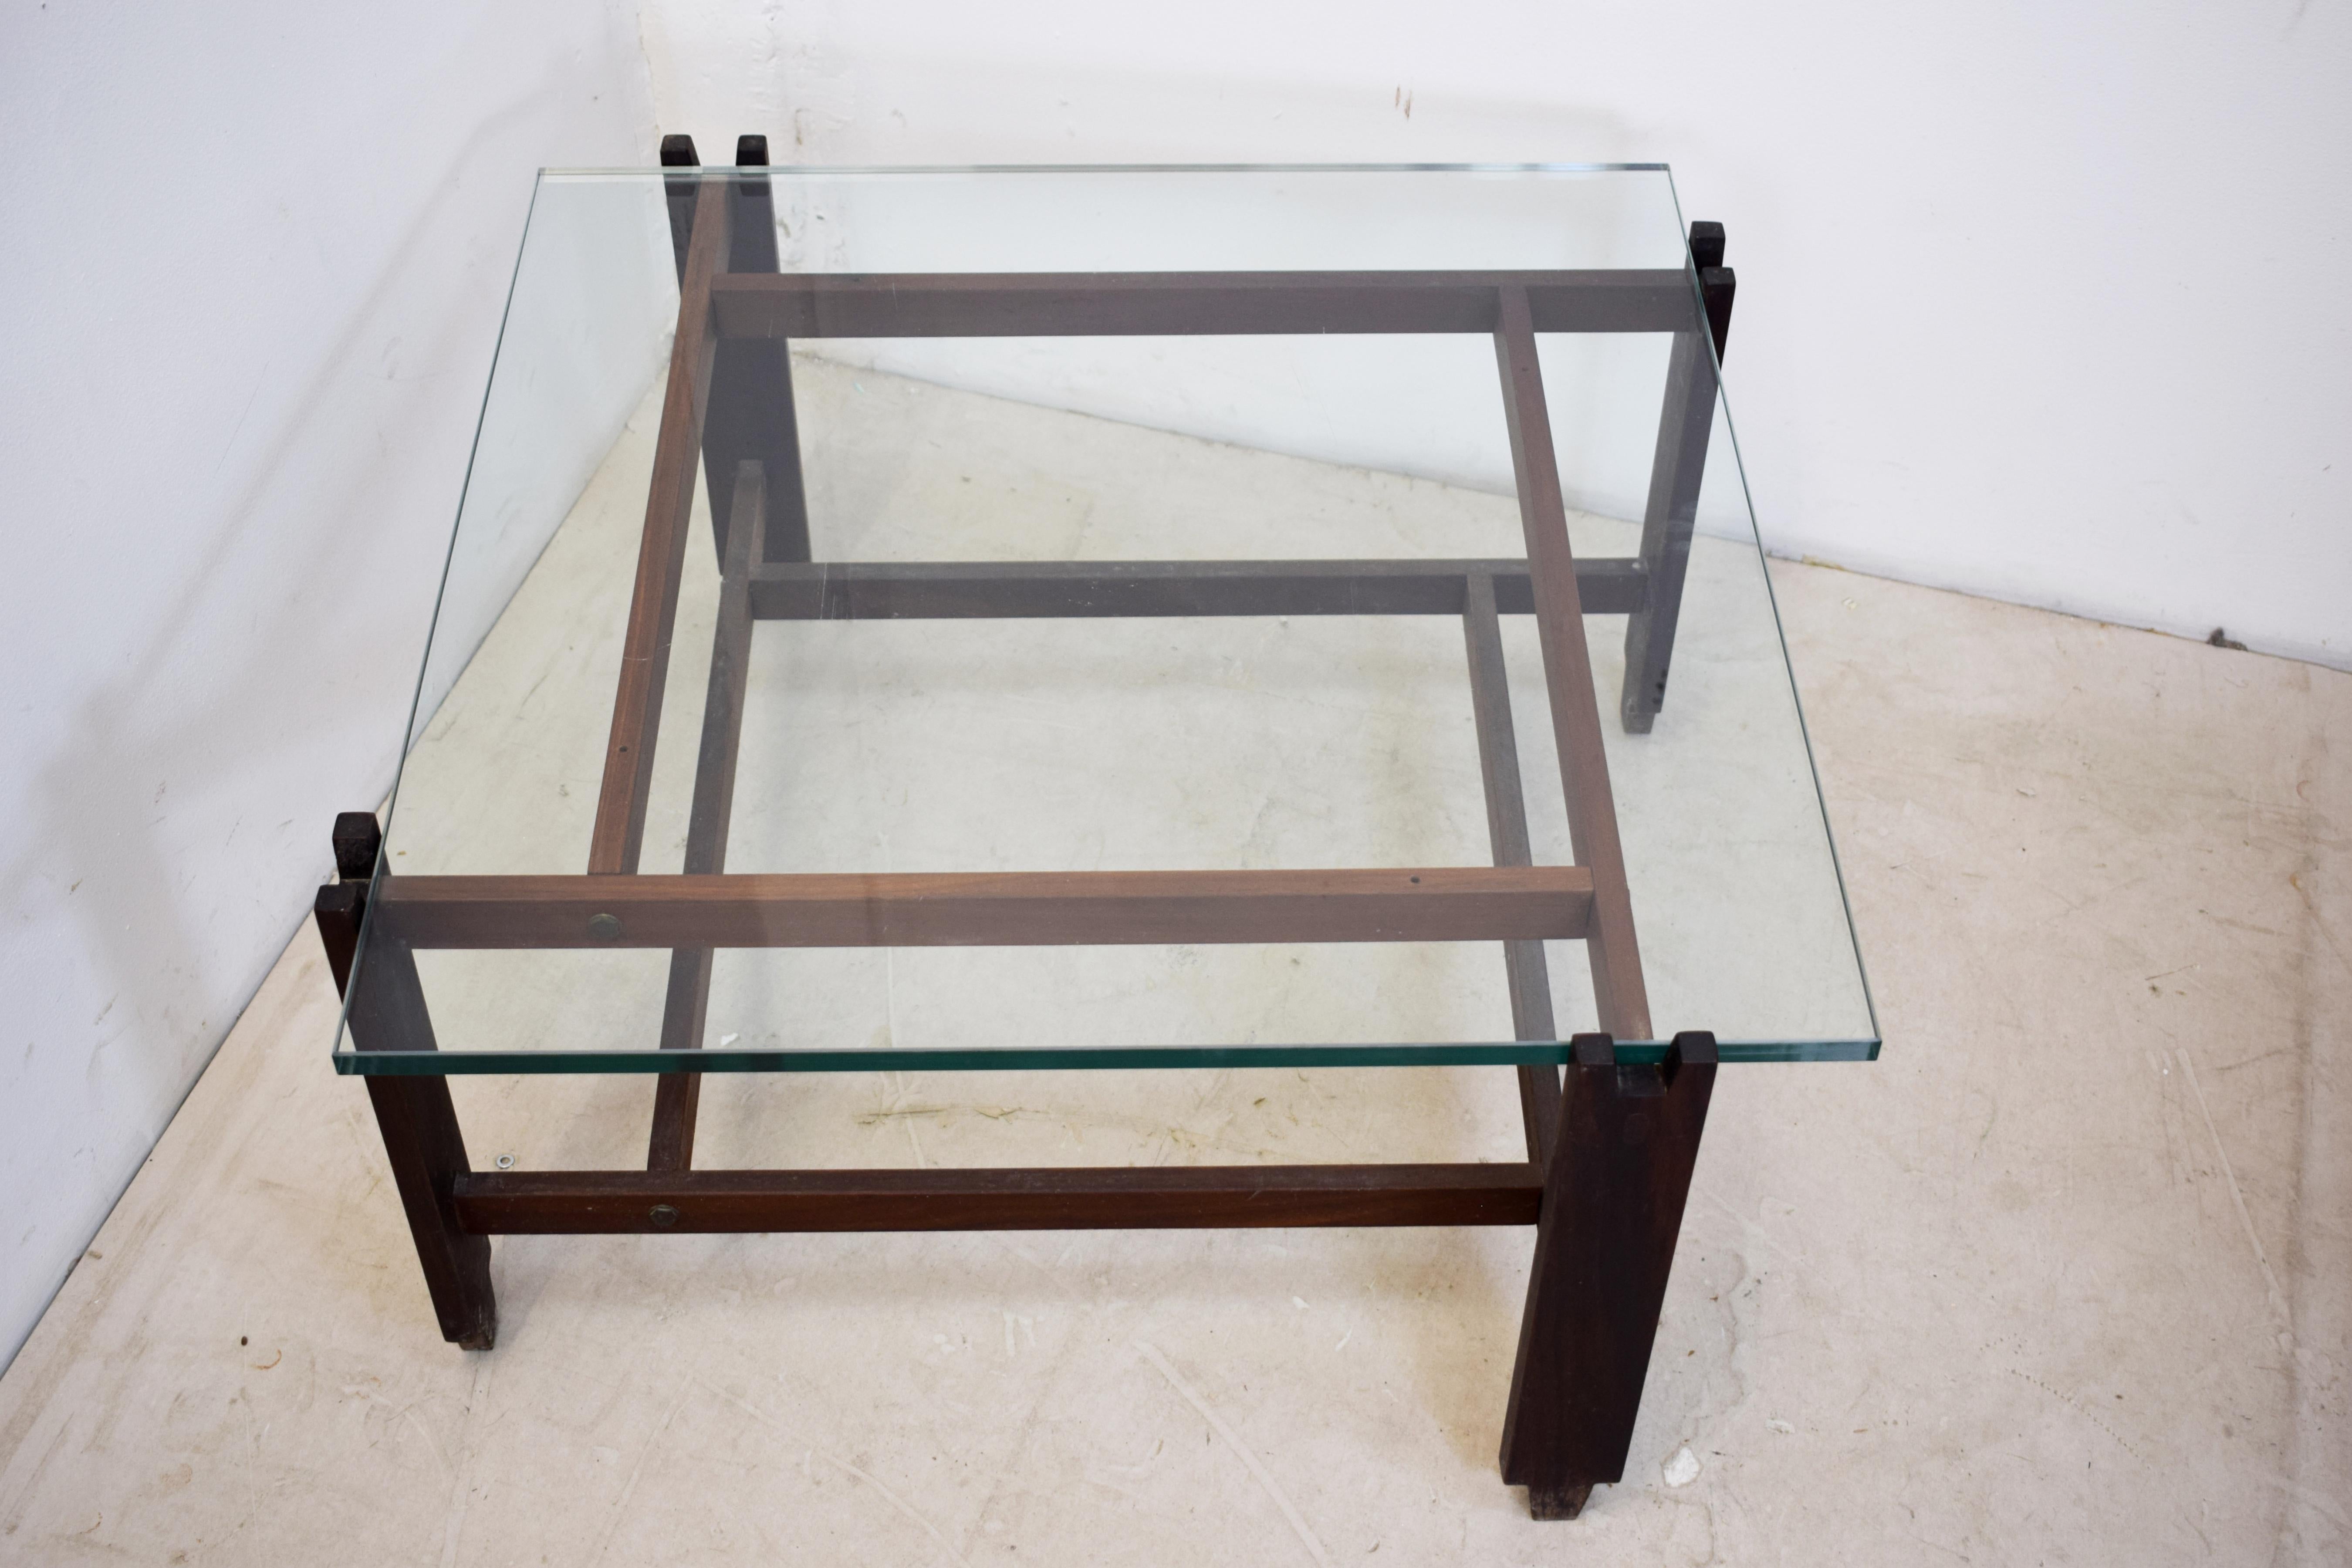 Table basse italienne, bois et verre, années 1960.
Dimensions : H= 35 cm ; L= 67 cm ; P= 67 cm.